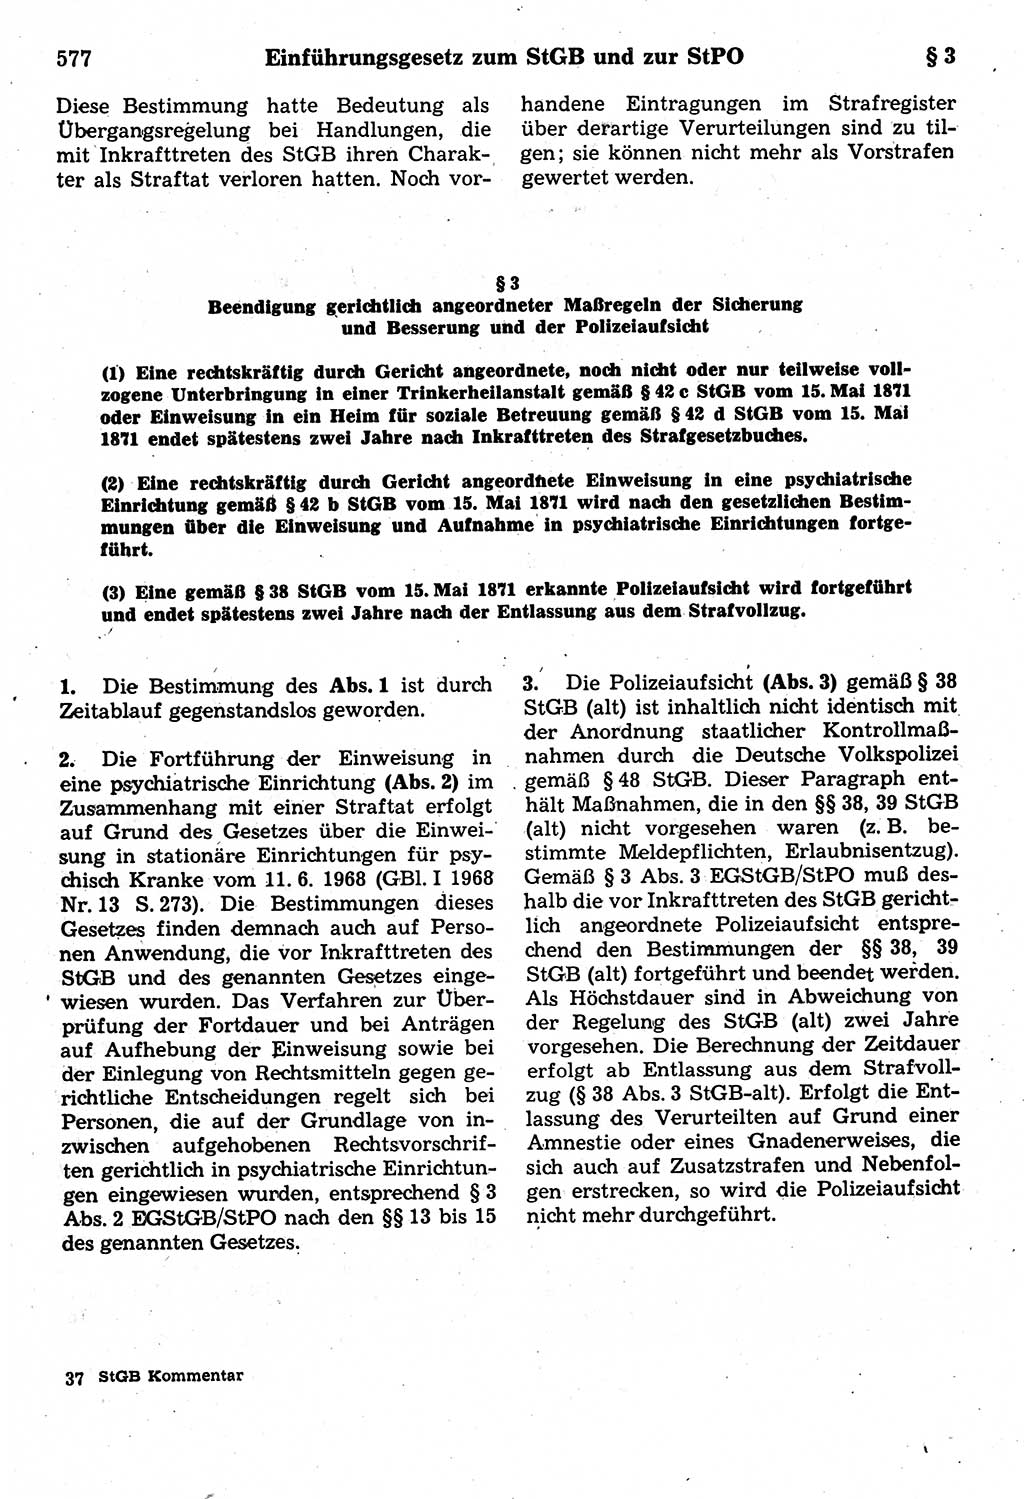 Strafrecht der Deutschen Demokratischen Republik (DDR), Kommentar zum Strafgesetzbuch (StGB) 1987, Seite 577 (Strafr. DDR Komm. StGB 1987, S. 577)